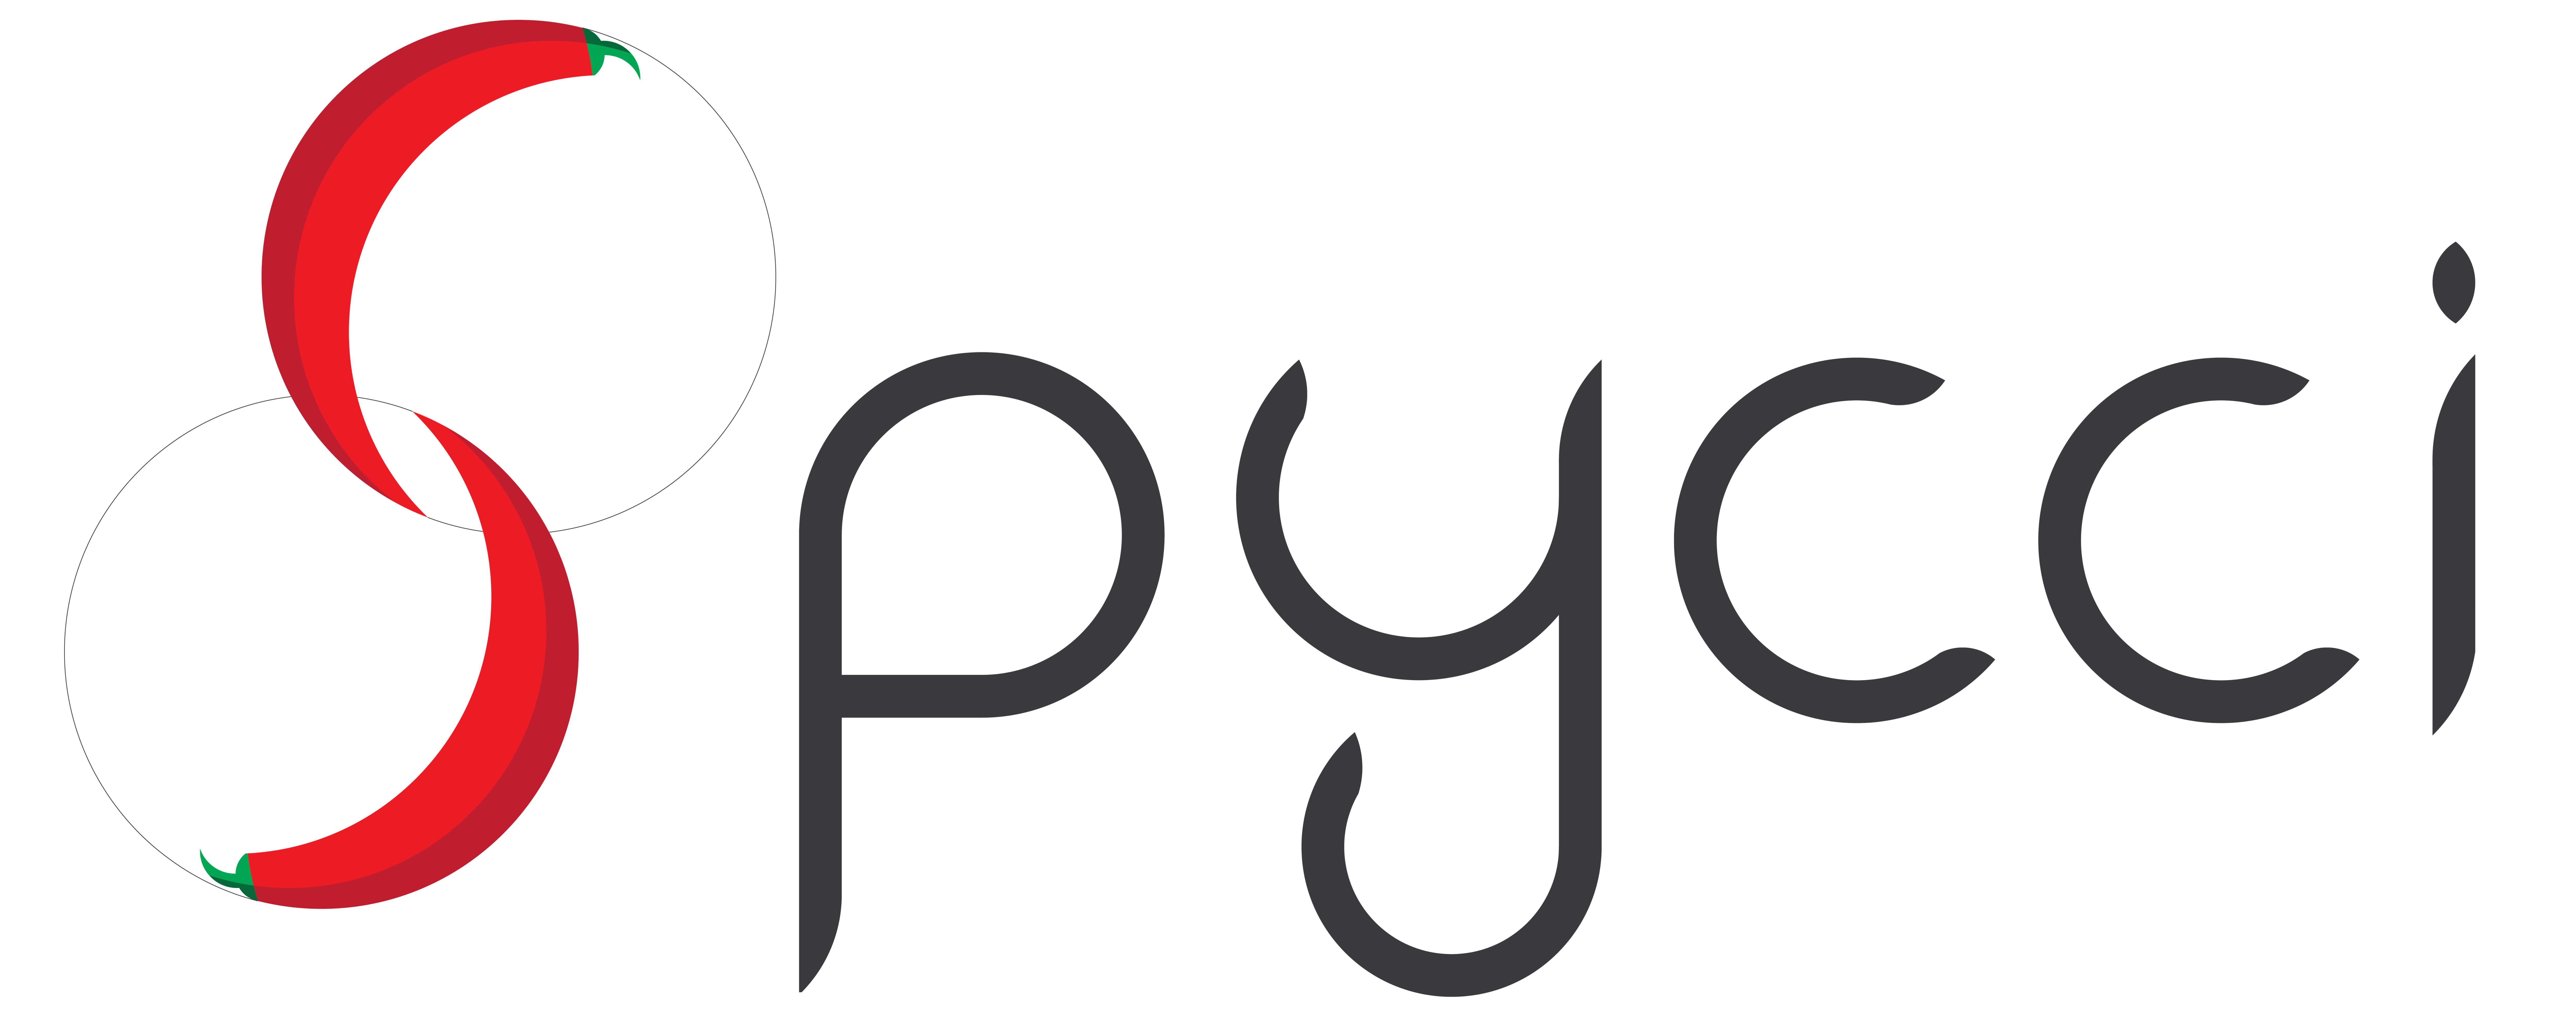 SPyCCI_logo_tr-01.png